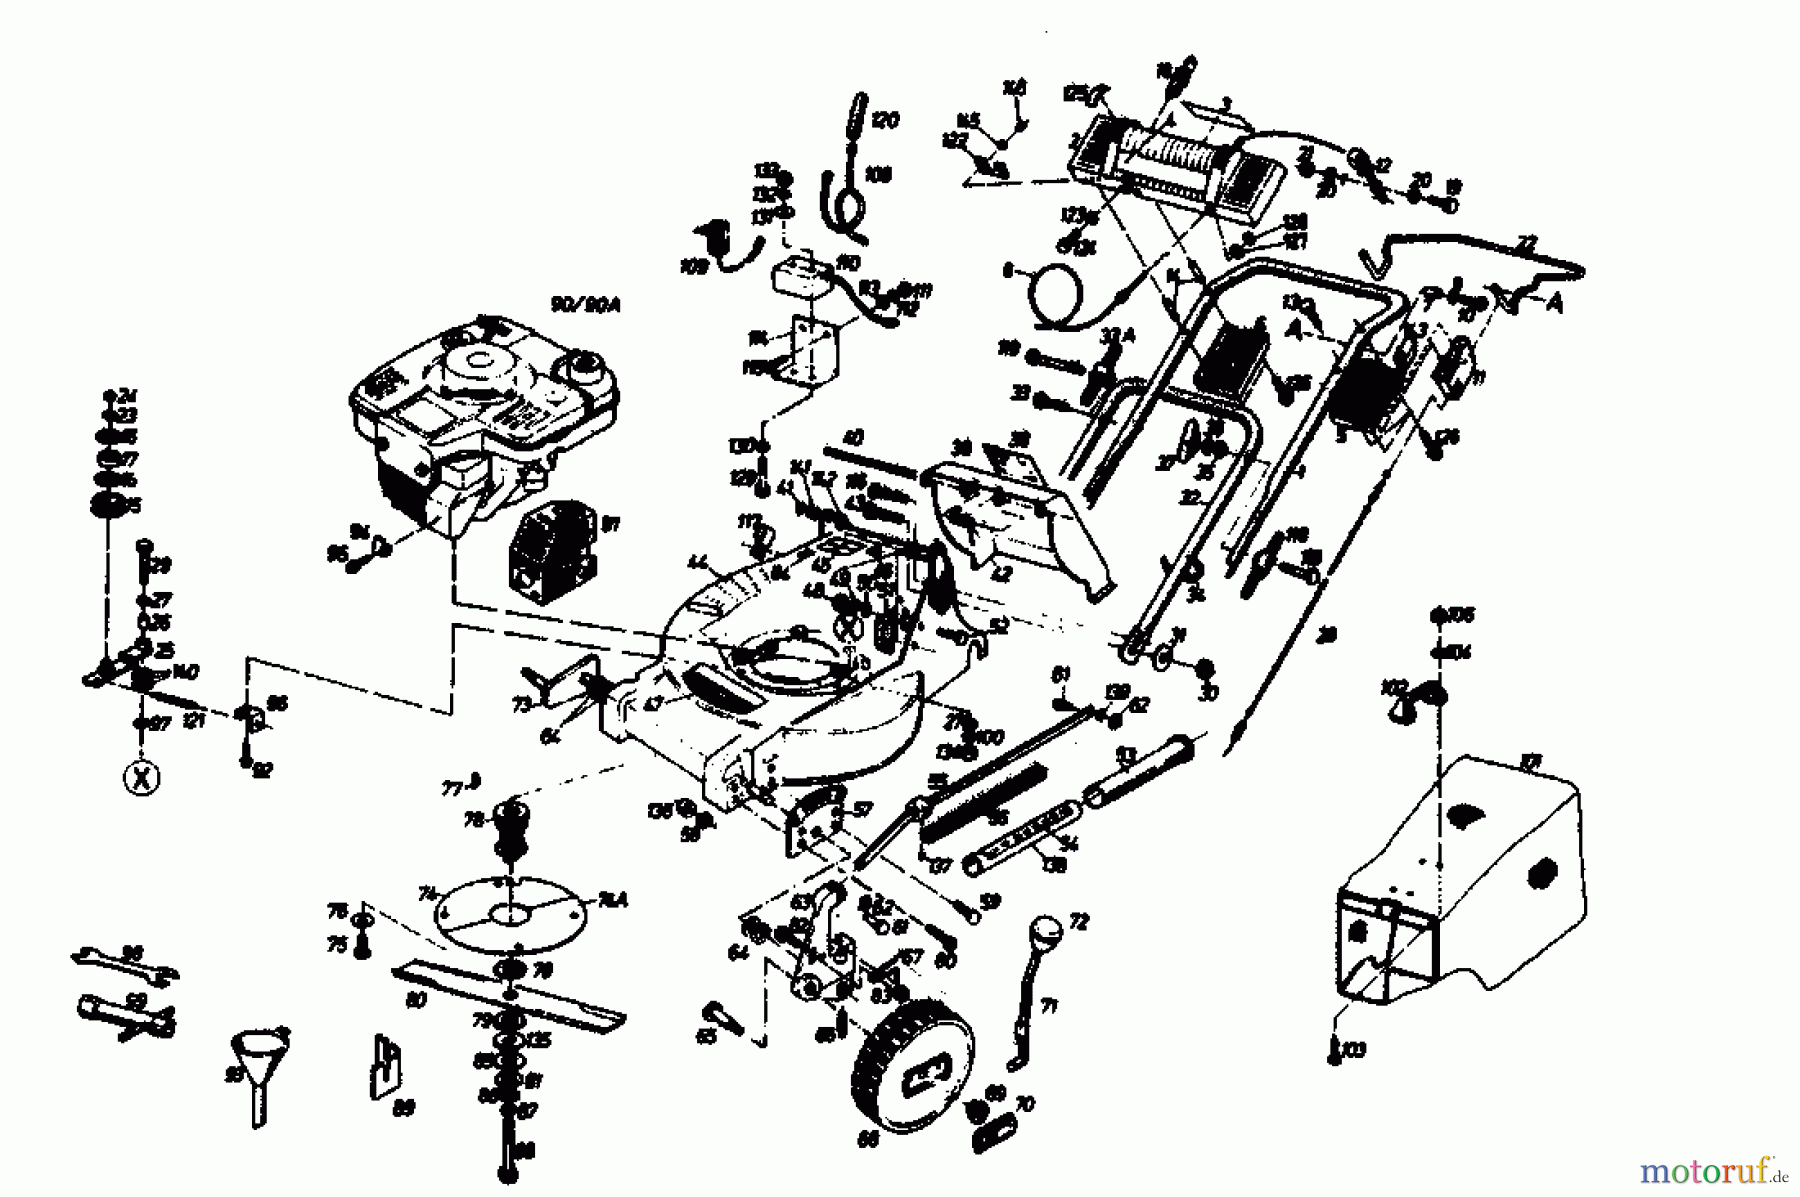  Gutbrod Motormäher mit Antrieb HB 56 R 02849.01  (1989) Grundgerät